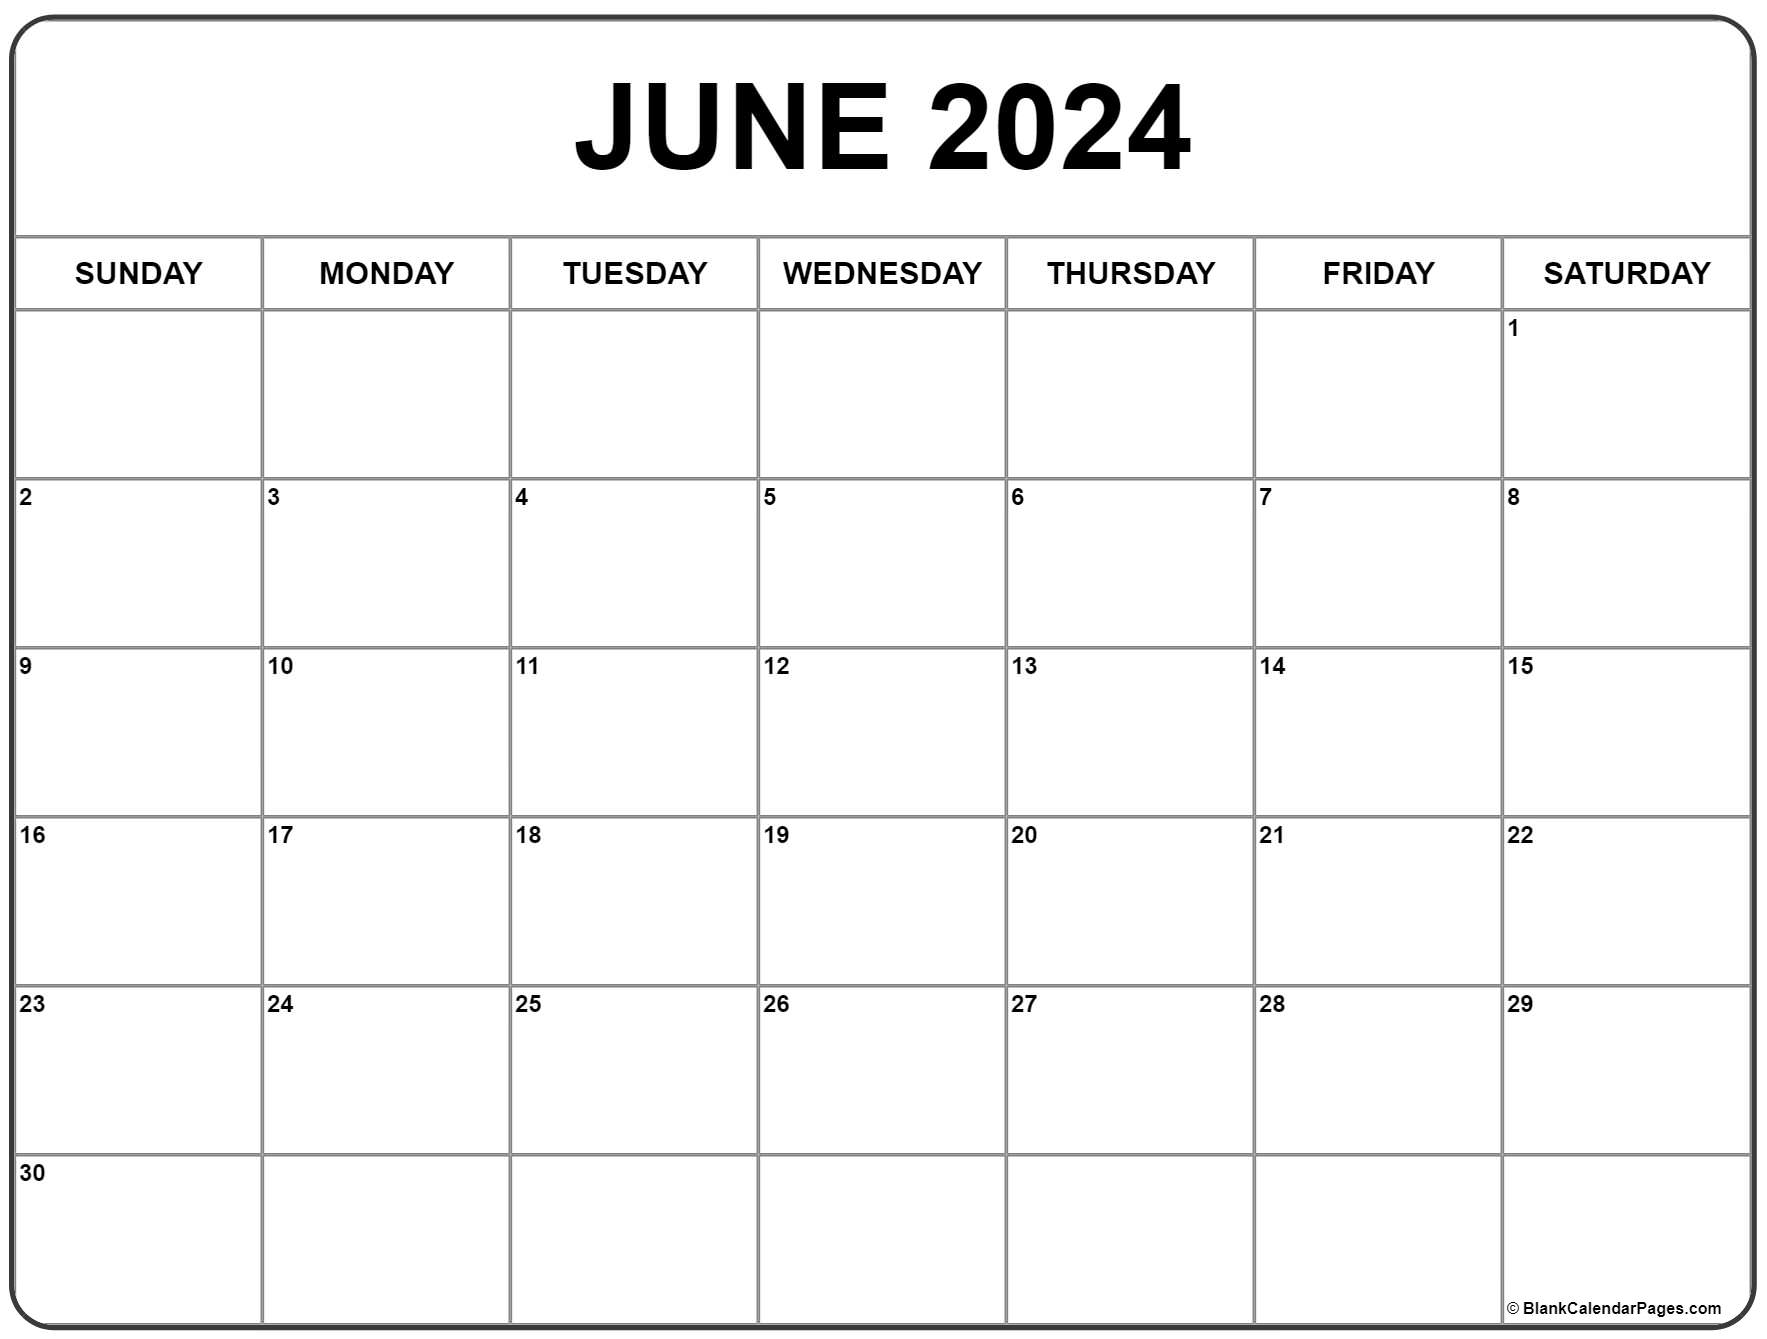 June 2024 Calendar | Free Printable Calendar for June Calendar 2024 Printable Free